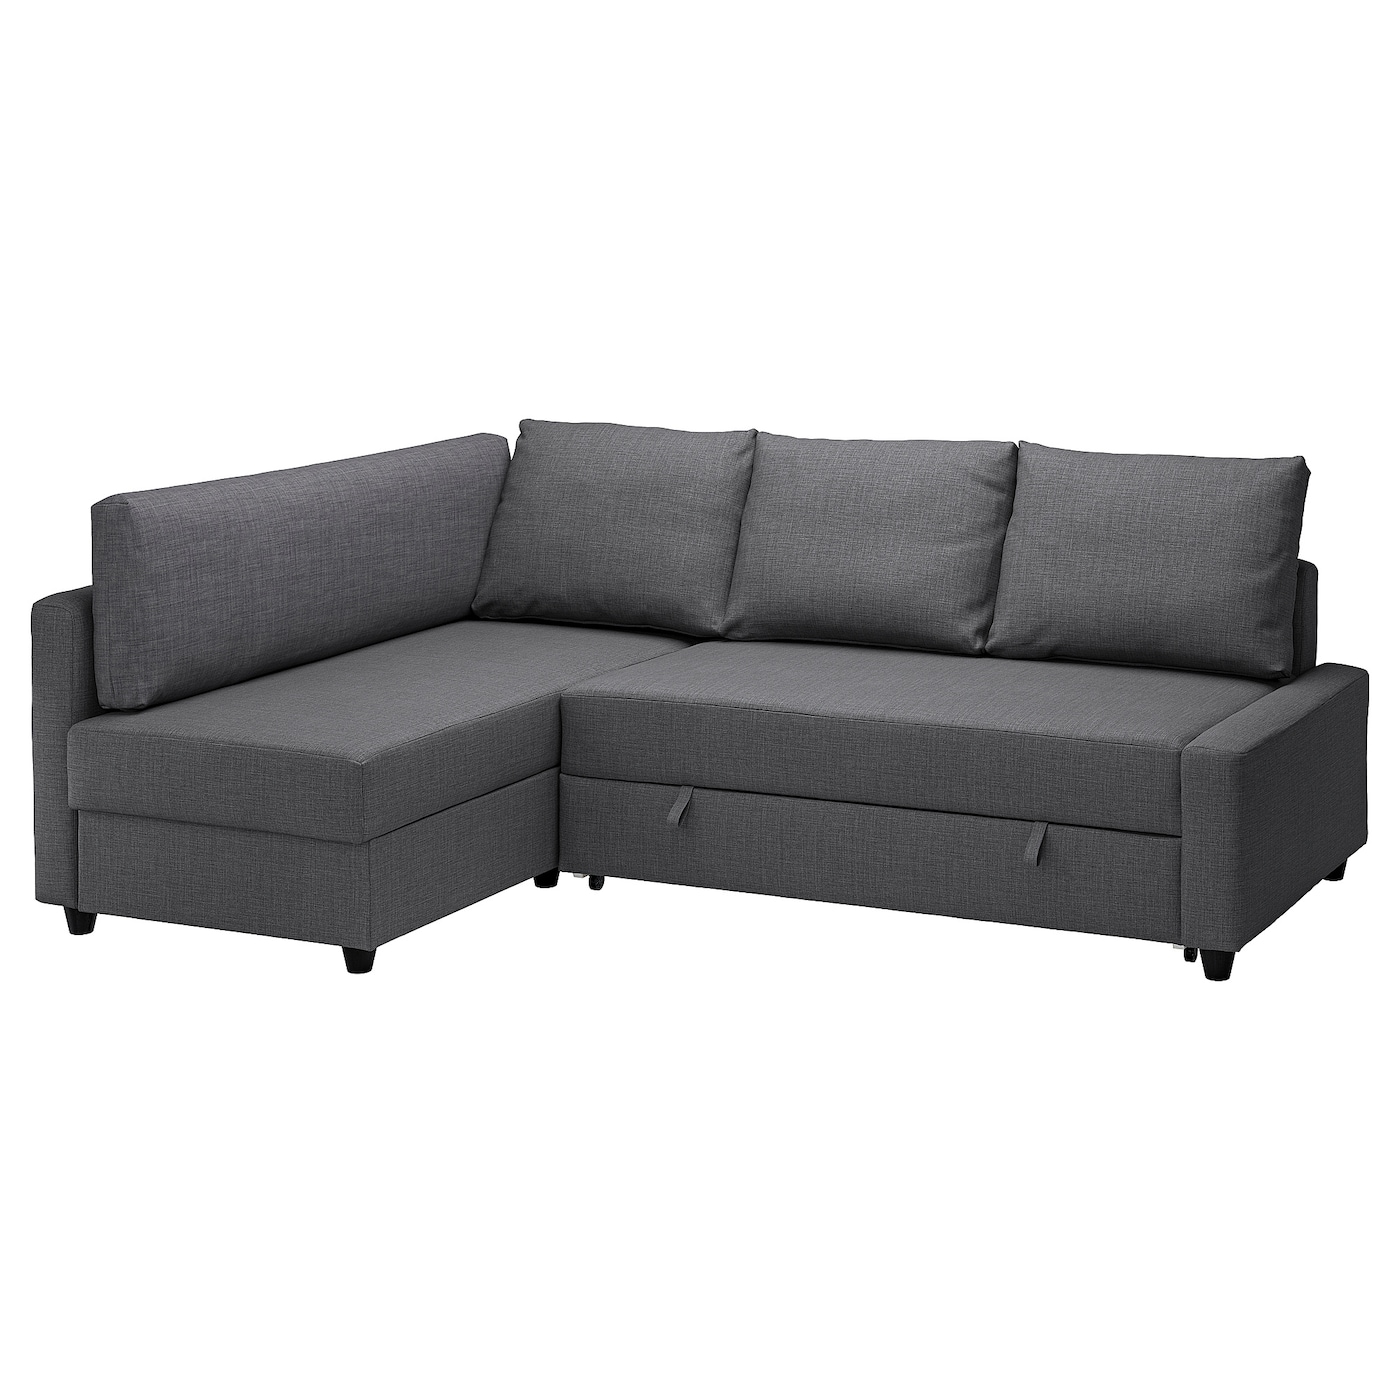 нексус 01 диван кровать ФРИХЕТЕН/КЛАГСХАМН Диван-кровать угловой + место для хранения, Скифтебо темно-серый FRIHETEN/KLAGSHAMN IKEA